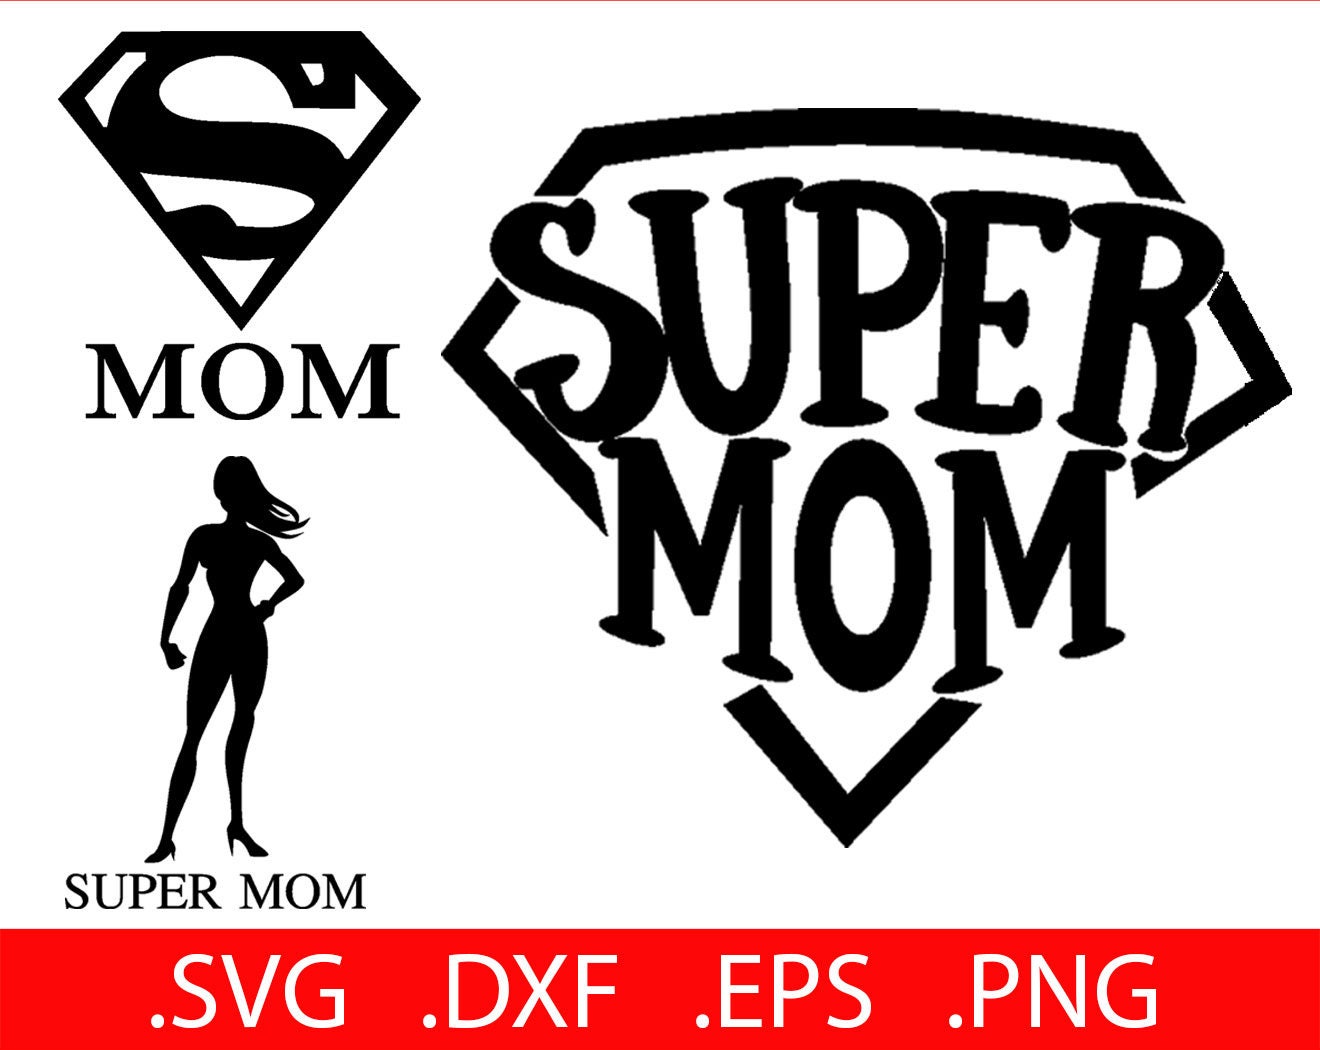 Download Super Mom SVG Files Super Mom SVG